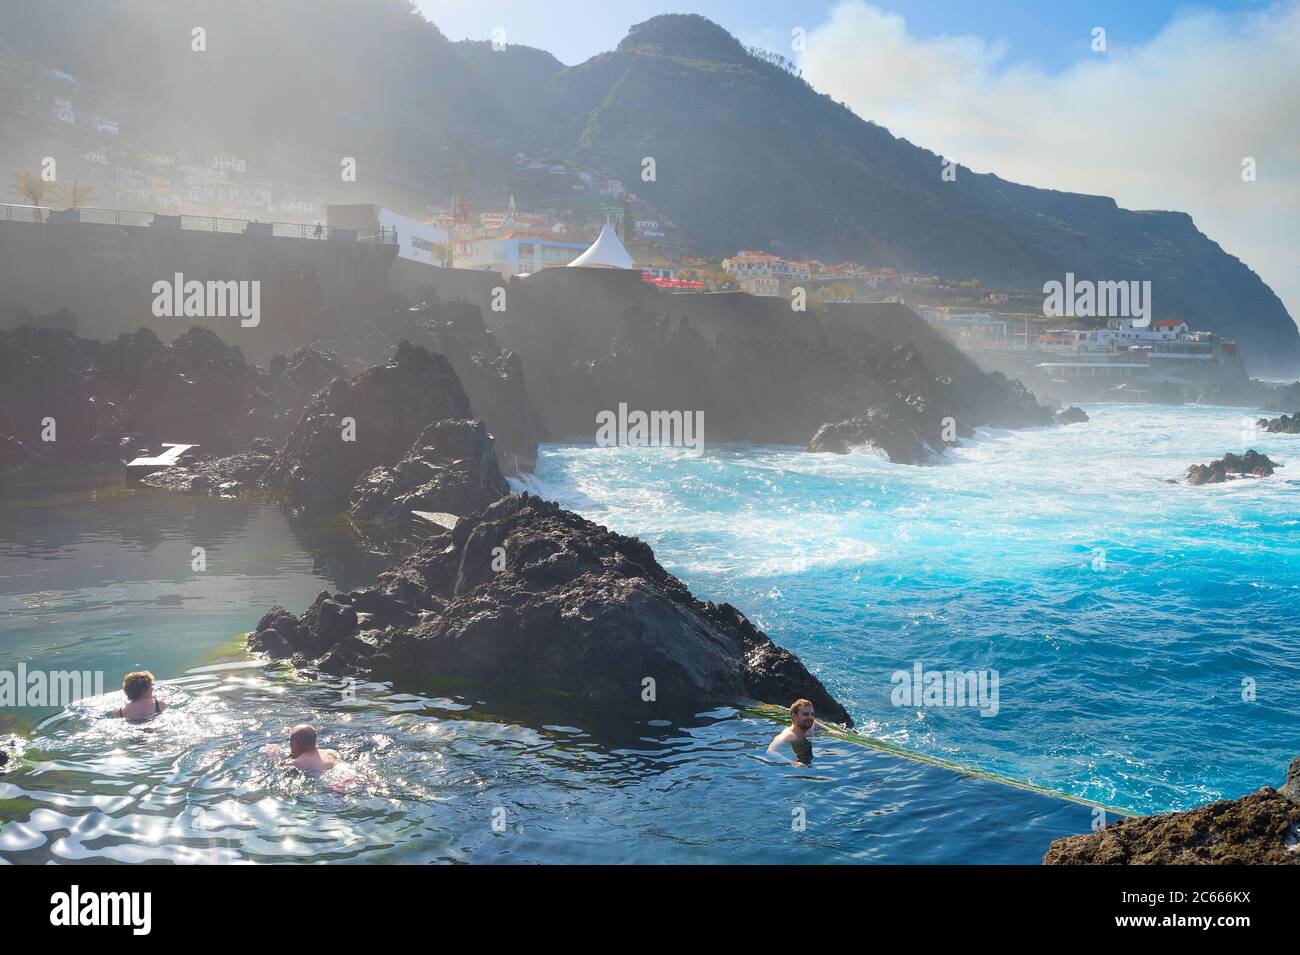 PORTO MONIZ, MADEIRA, PORTUGAL - 03. FEB 2020: Menschen baden in natürlichen Lavabecken. Lavabecken sind die Hauptattraktion von Madeira. Stockfoto